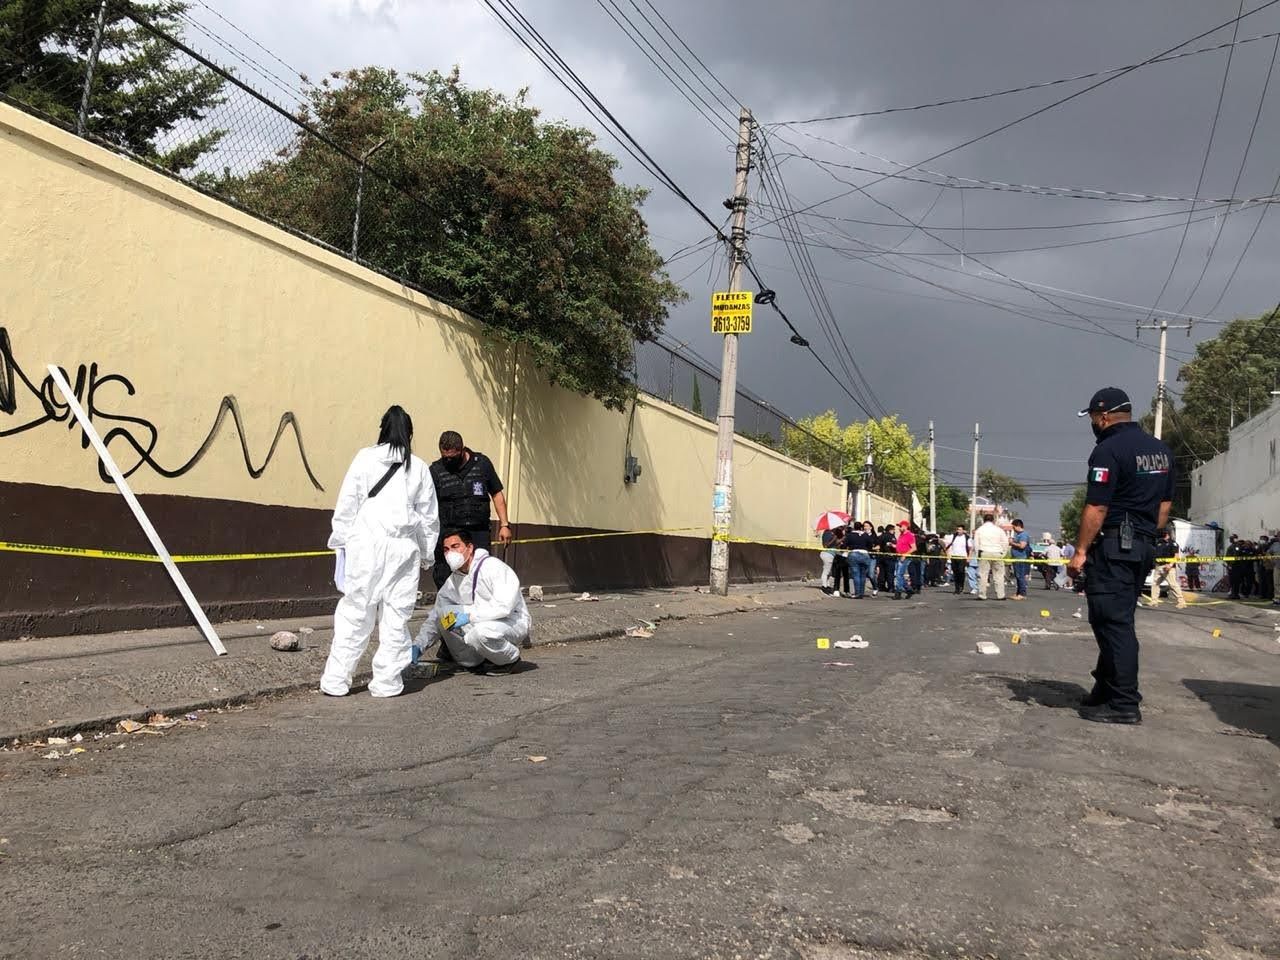 Balean a policía de Ecatepec para robarle su arma de cargo; señaló la autoridad municipal que el agresor fue abatido

